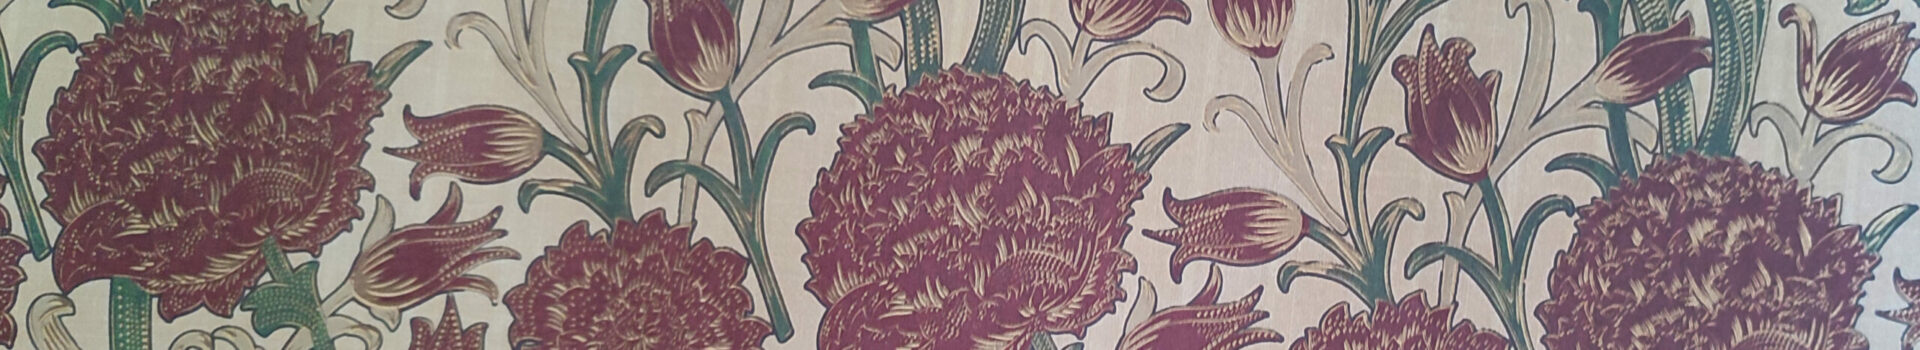 papel italiano de estampado floral con granates y dorados sobre beige para forrar cajas decorativas by Agnes Bloom